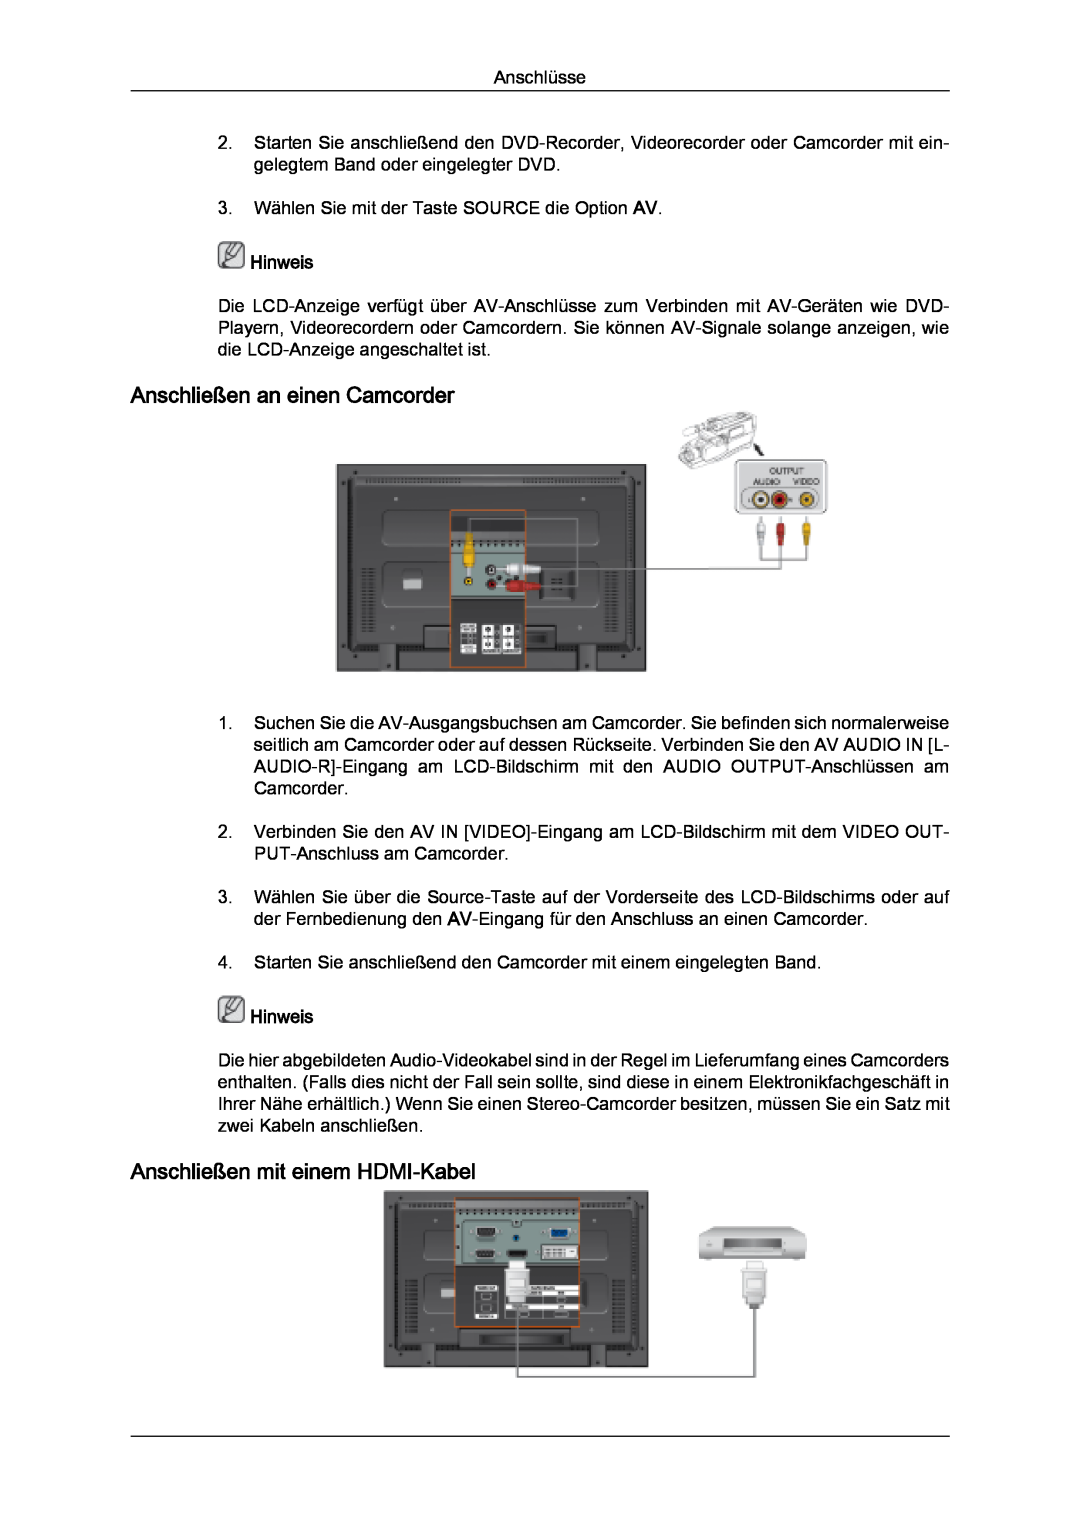 Samsung LH32MGQLBC/EN, LH32MGULBC/EN manual Anschließen an einen Camcorder, Anschließen mit einem HDMI-Kabel, Hinweis 